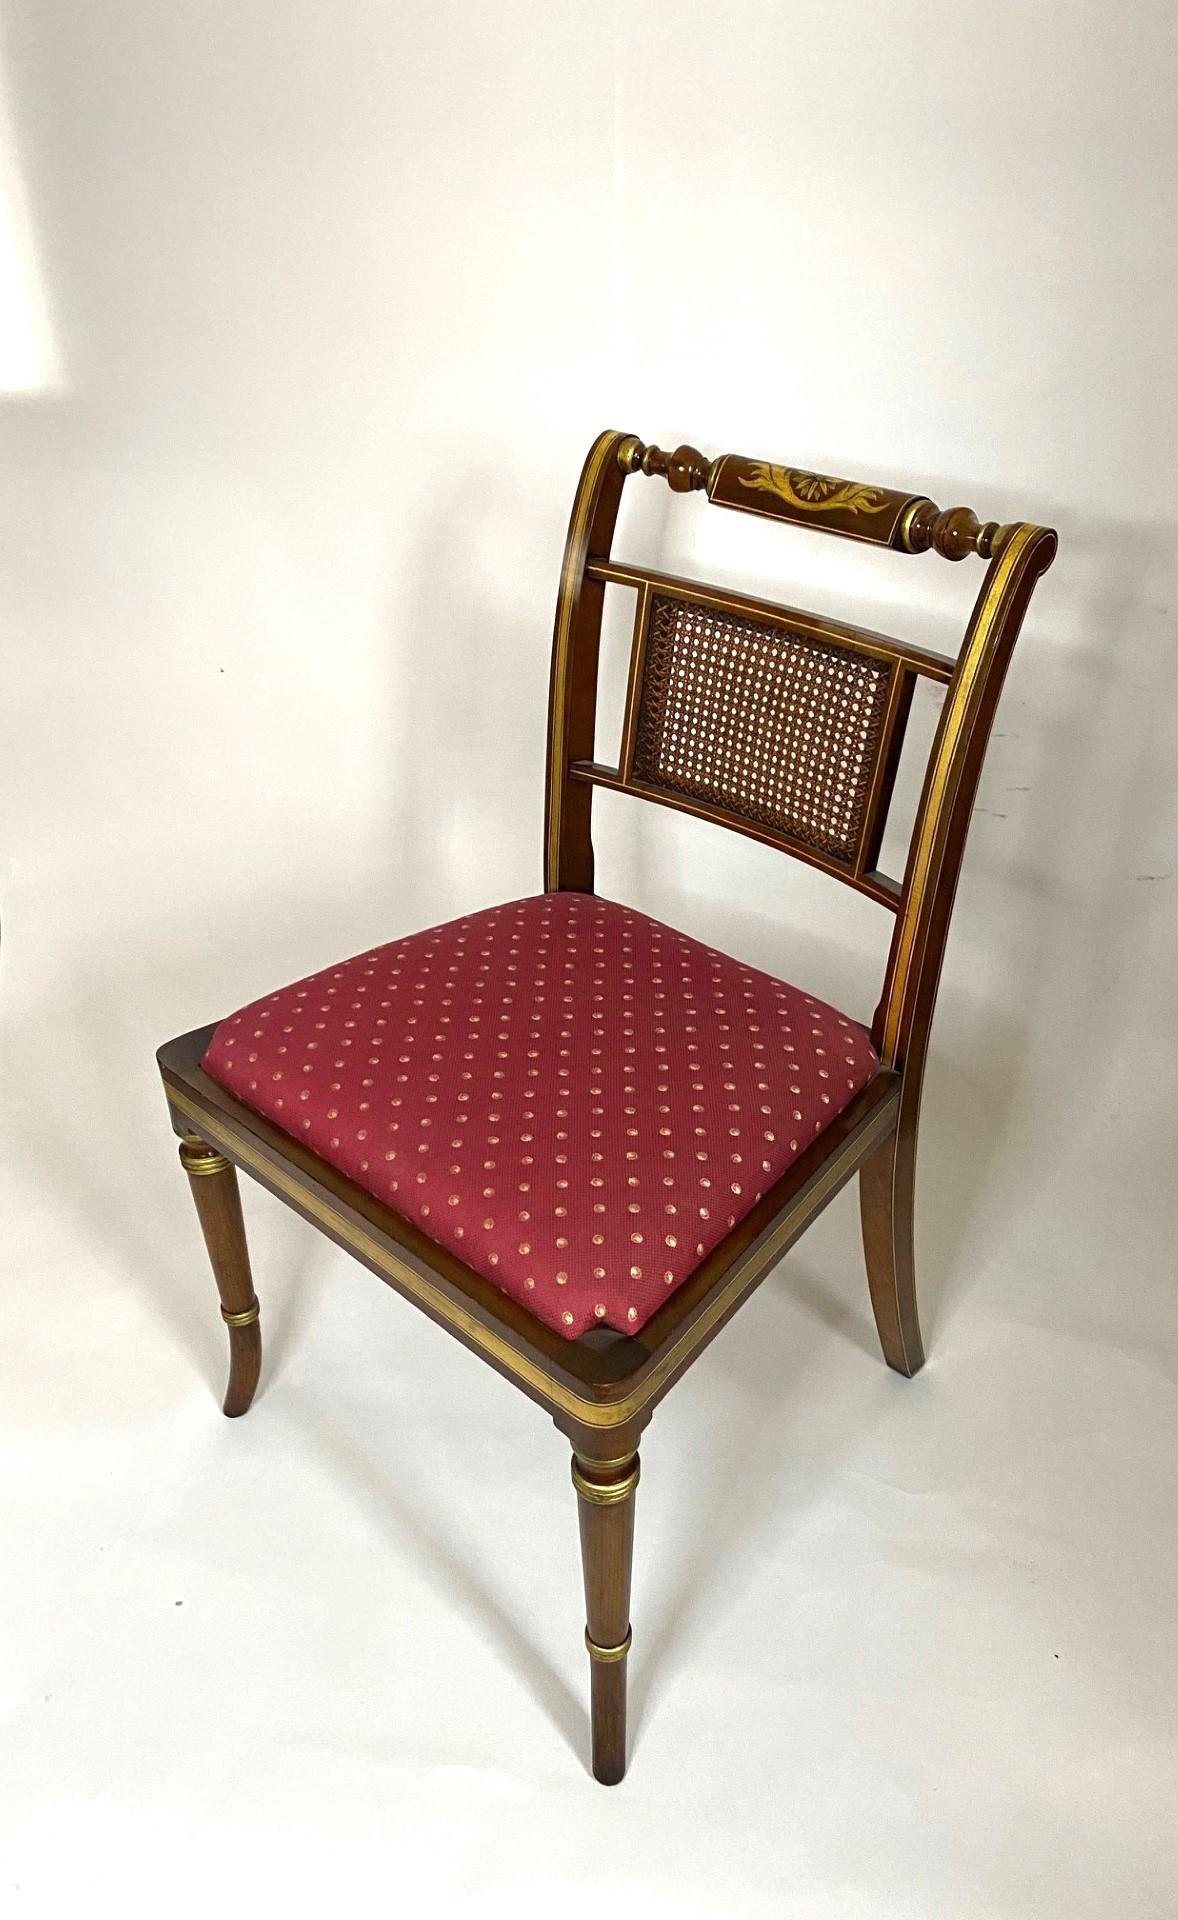 Dieses NEUE  Wood & Hogan English-Made Regency Style Faux Rosewood Side Chair ist ein exquisites Möbelstück, das die Eleganz und Handwerkskunst der Regency-Ära verkörpert. Der mit viel Liebe zum Detail gefertigte Stuhl ist mit einer